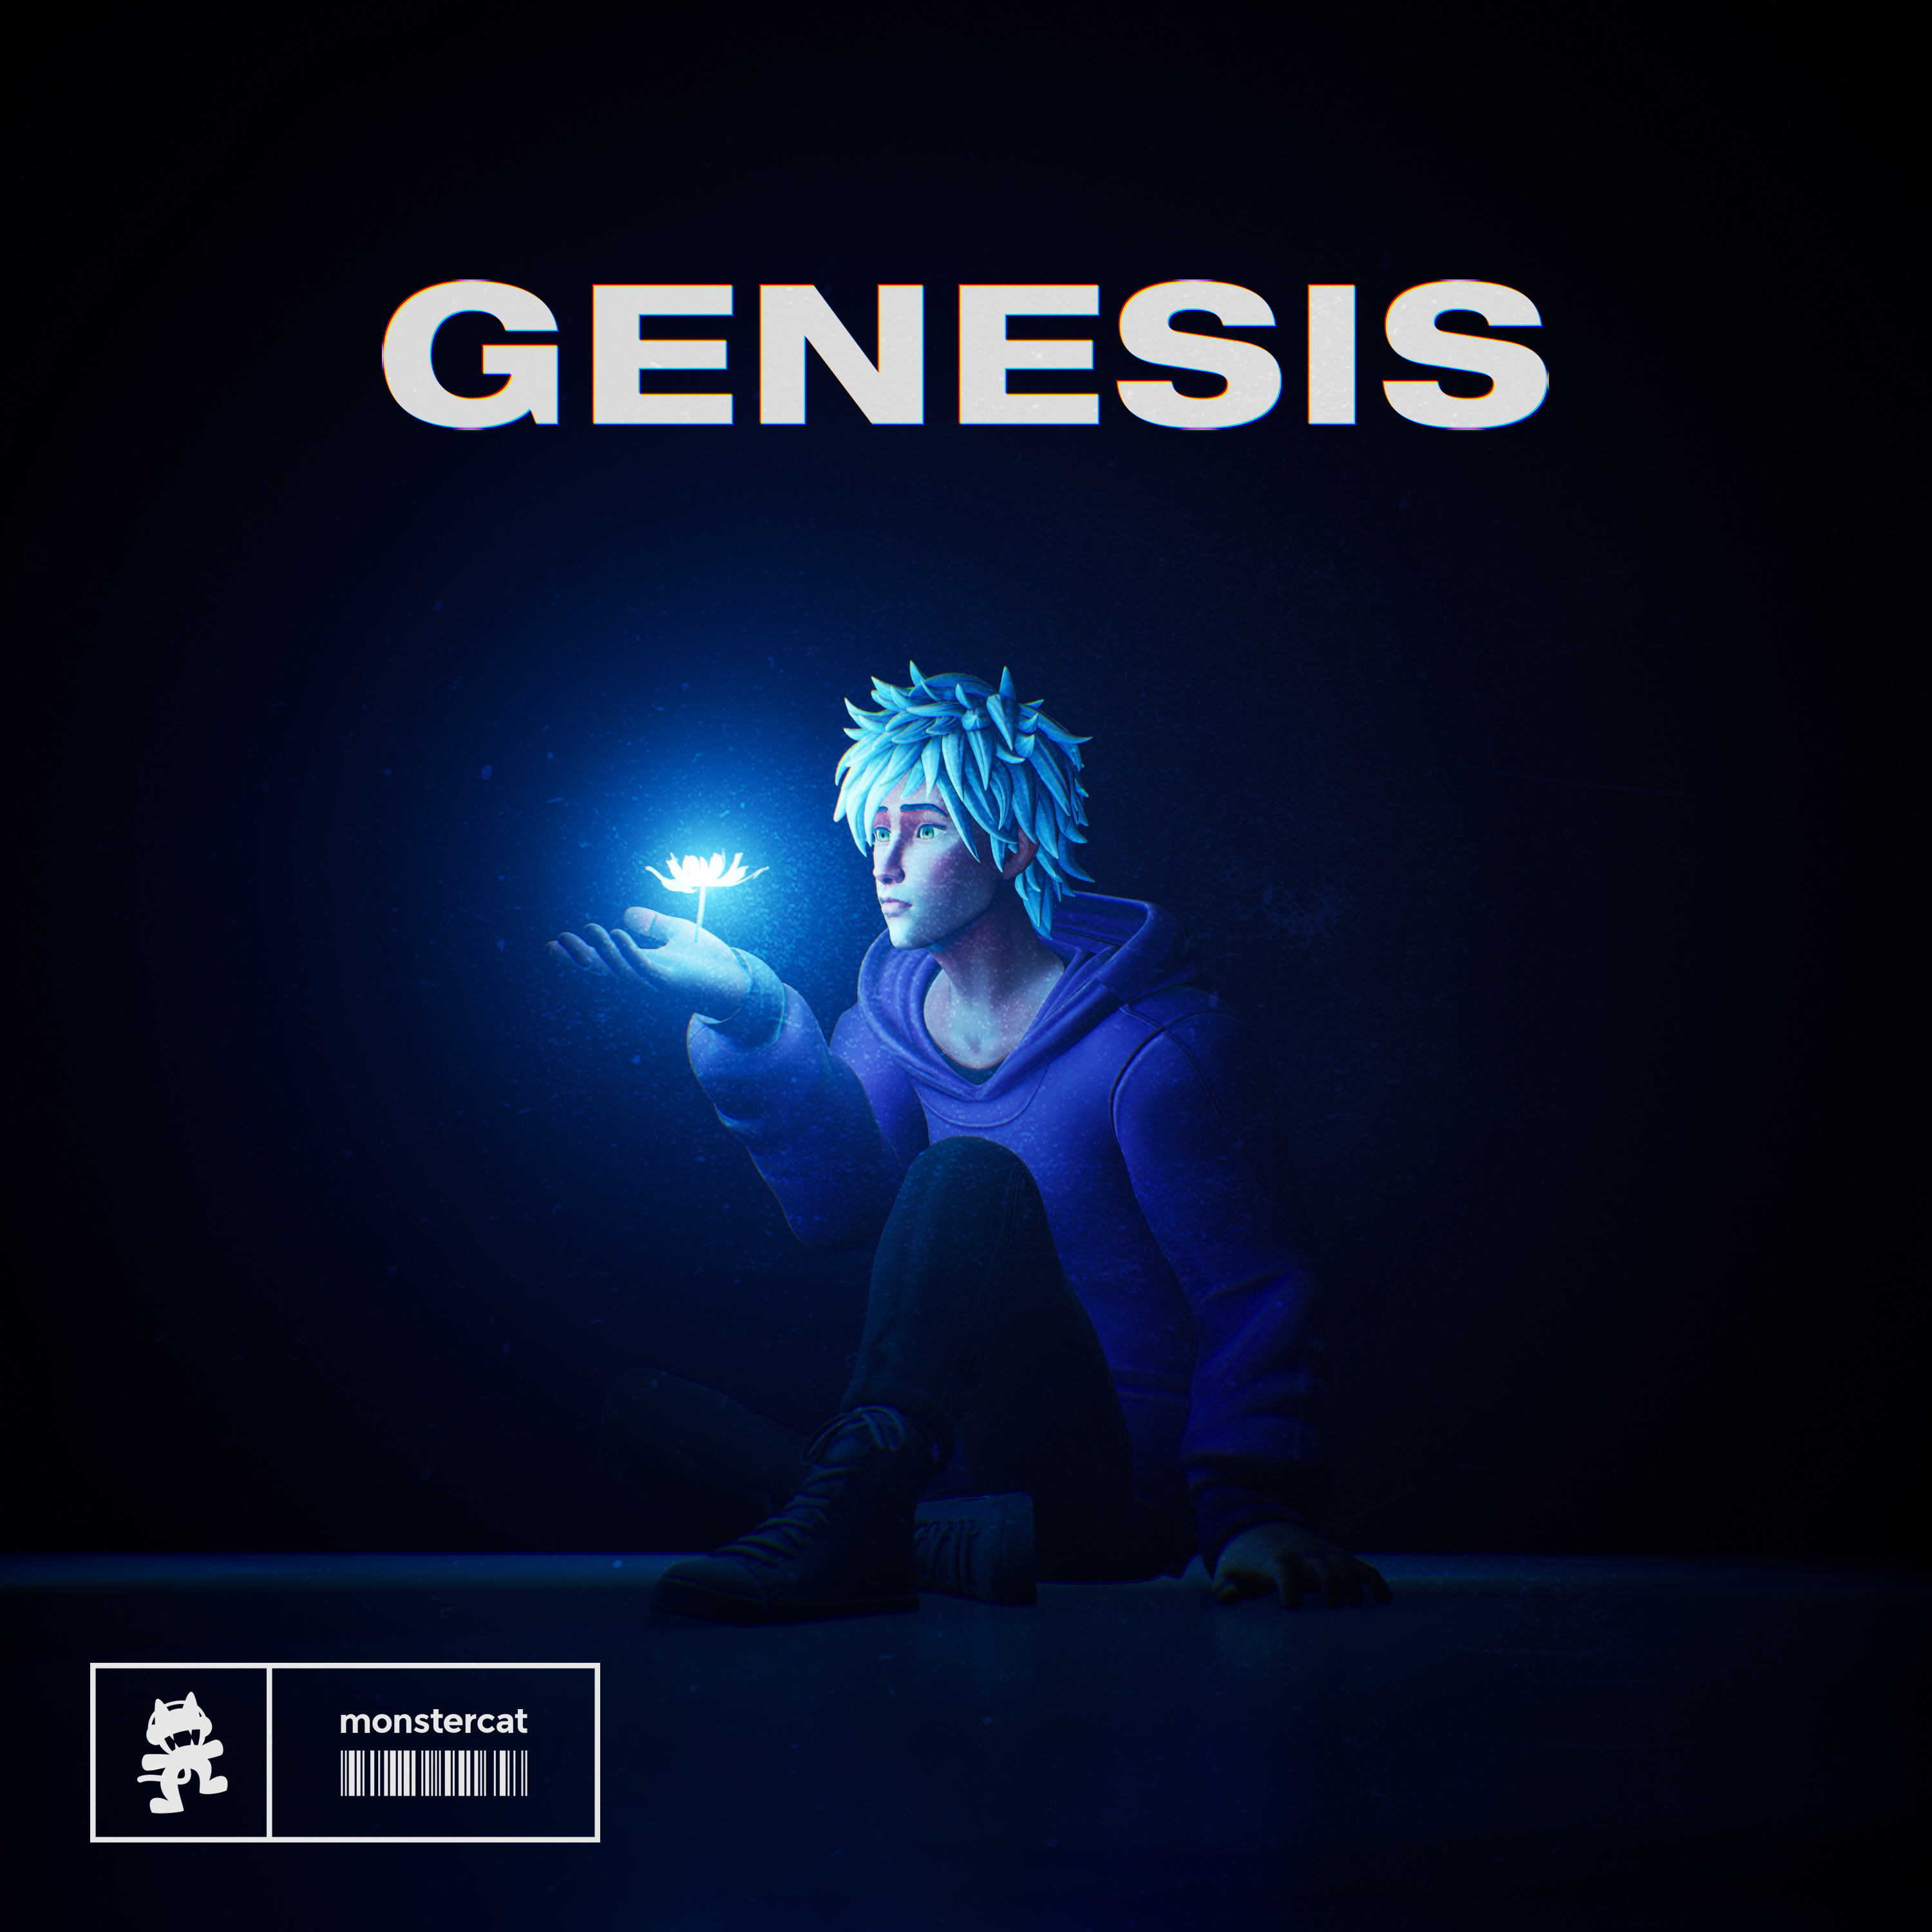 Fairlane Combines Dance And Rock On Groundbreaking EP ‘Genesis’